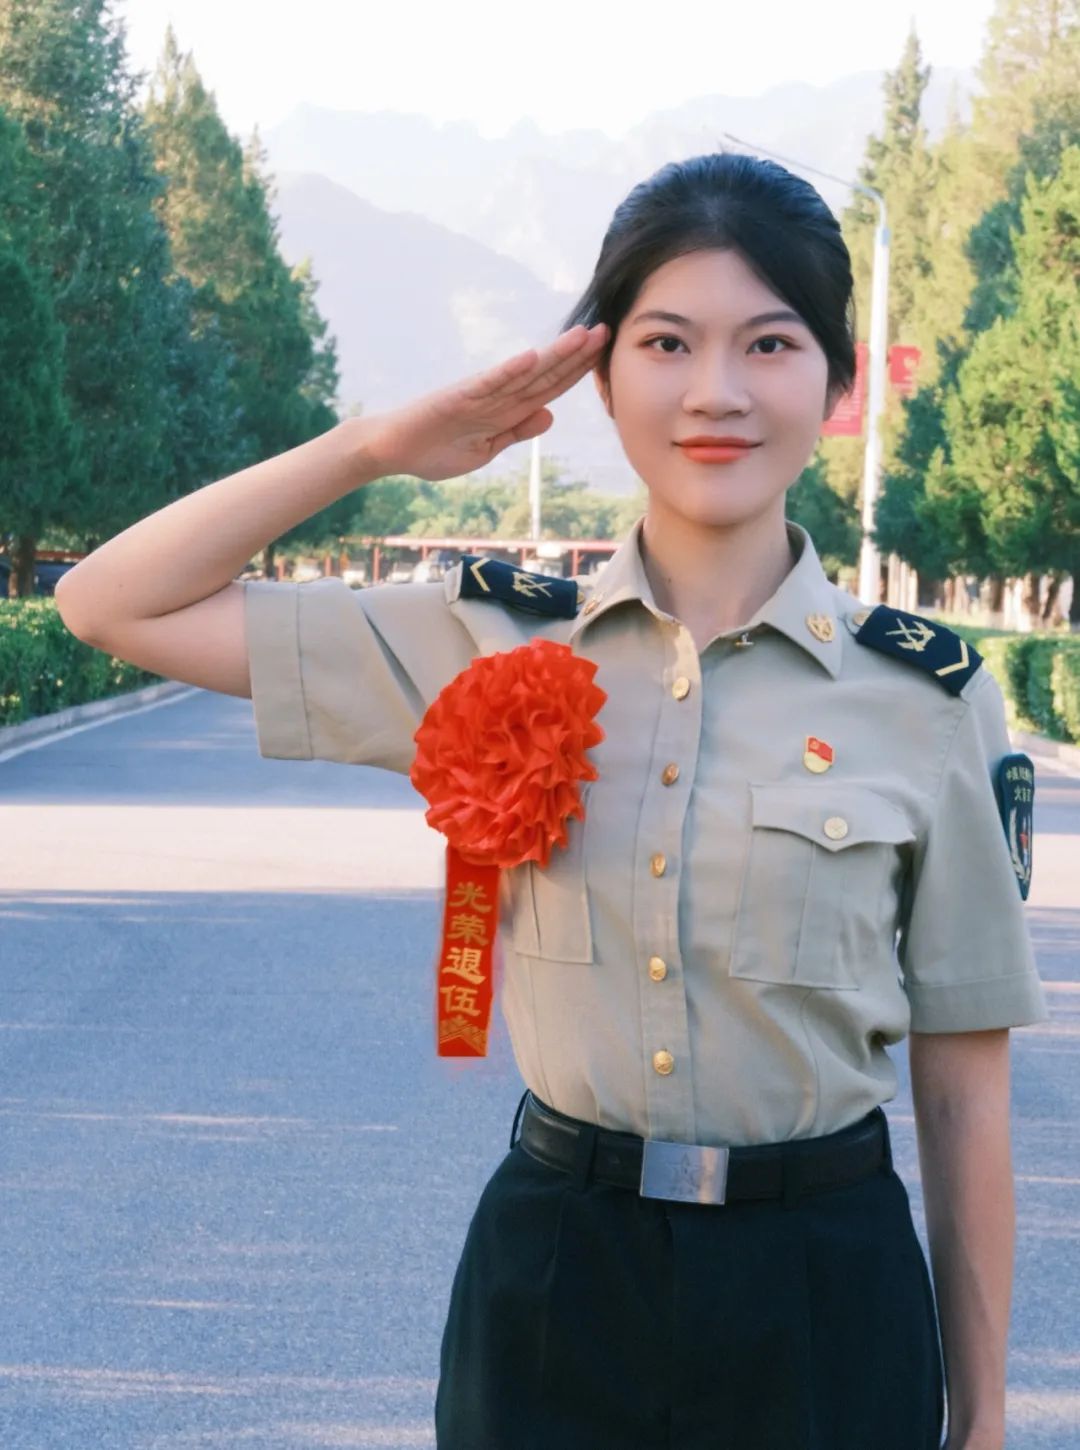 中国陆军女兵图片